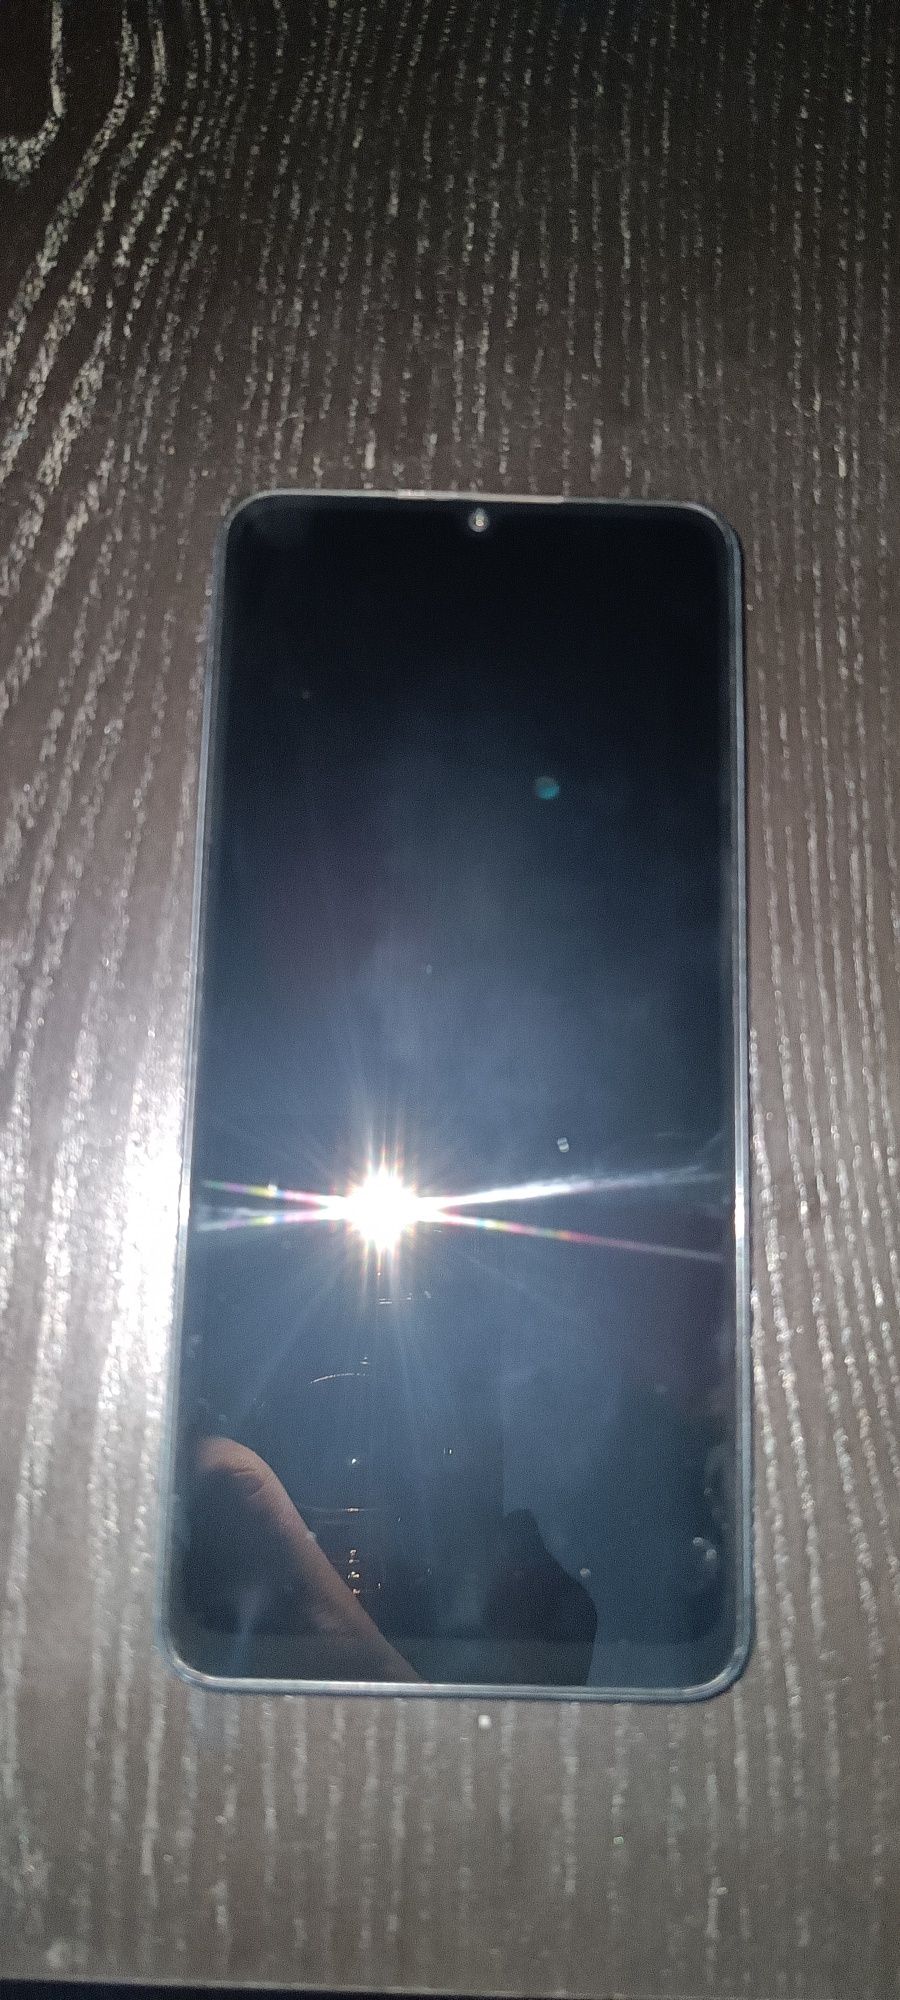 Xiaomi Redmi 13C